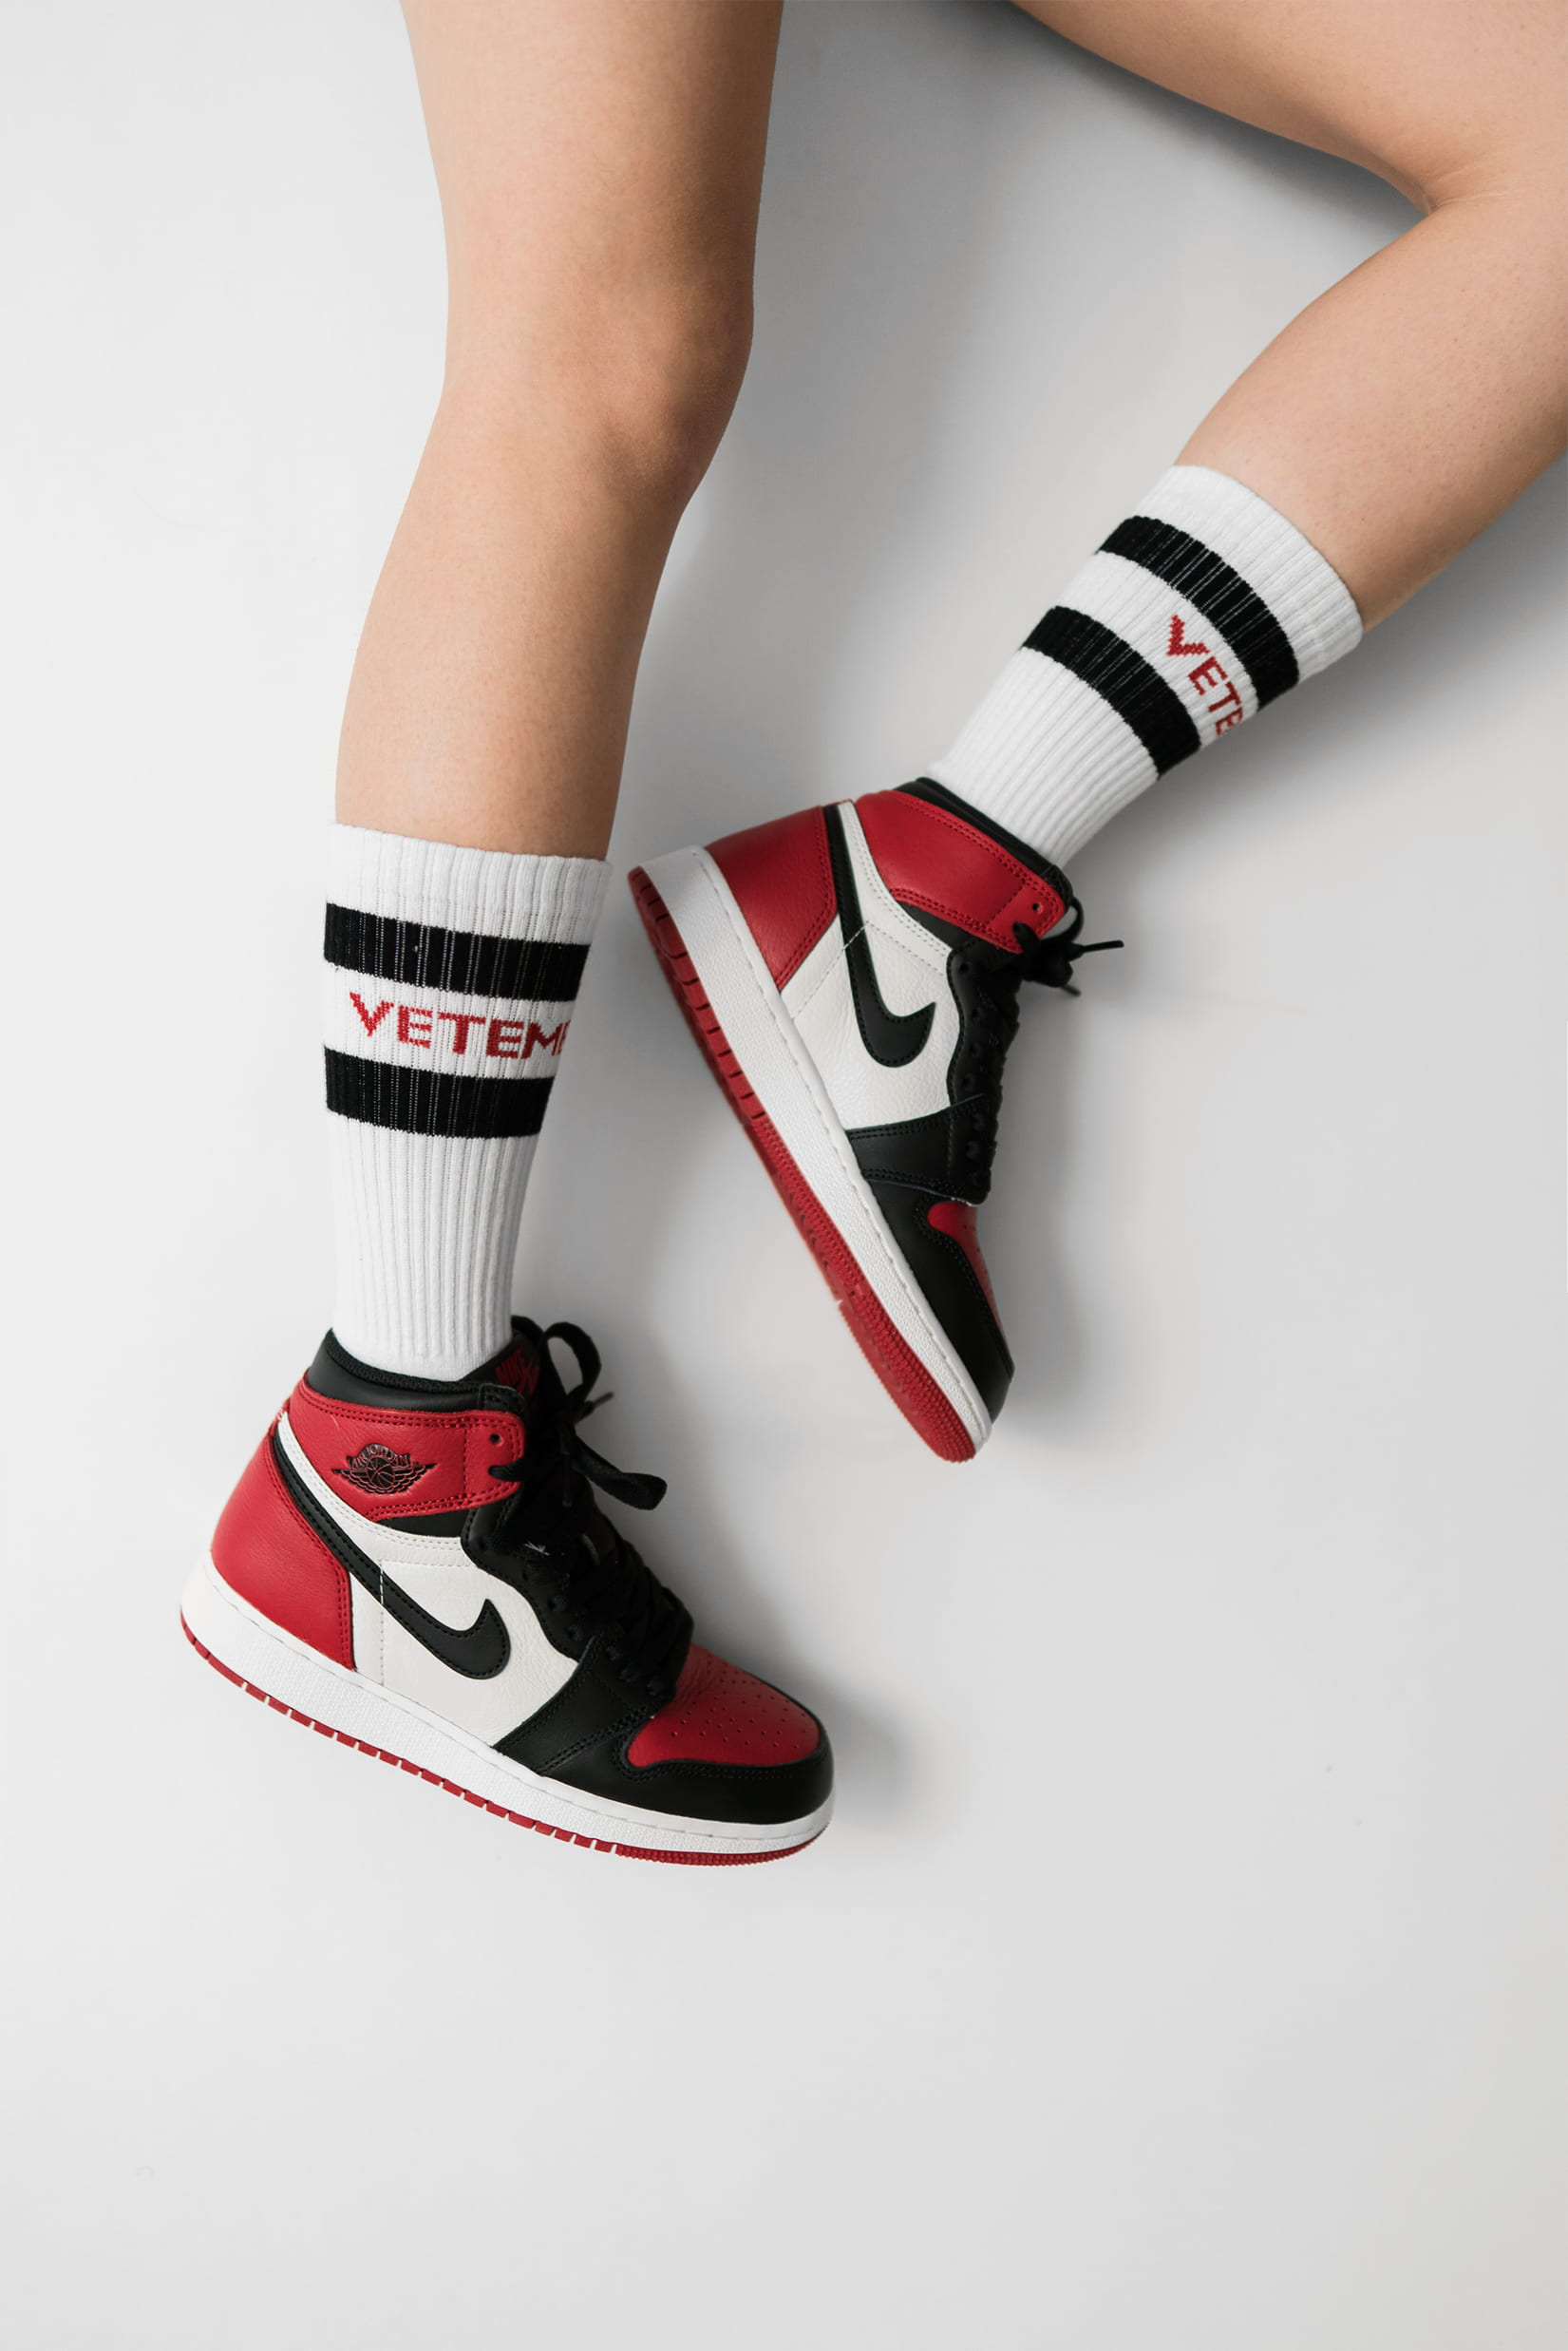 Wallpaper person wearing pair of black toe Air Jordan 1's, white-red-and-black Nike Air Jordan 1's